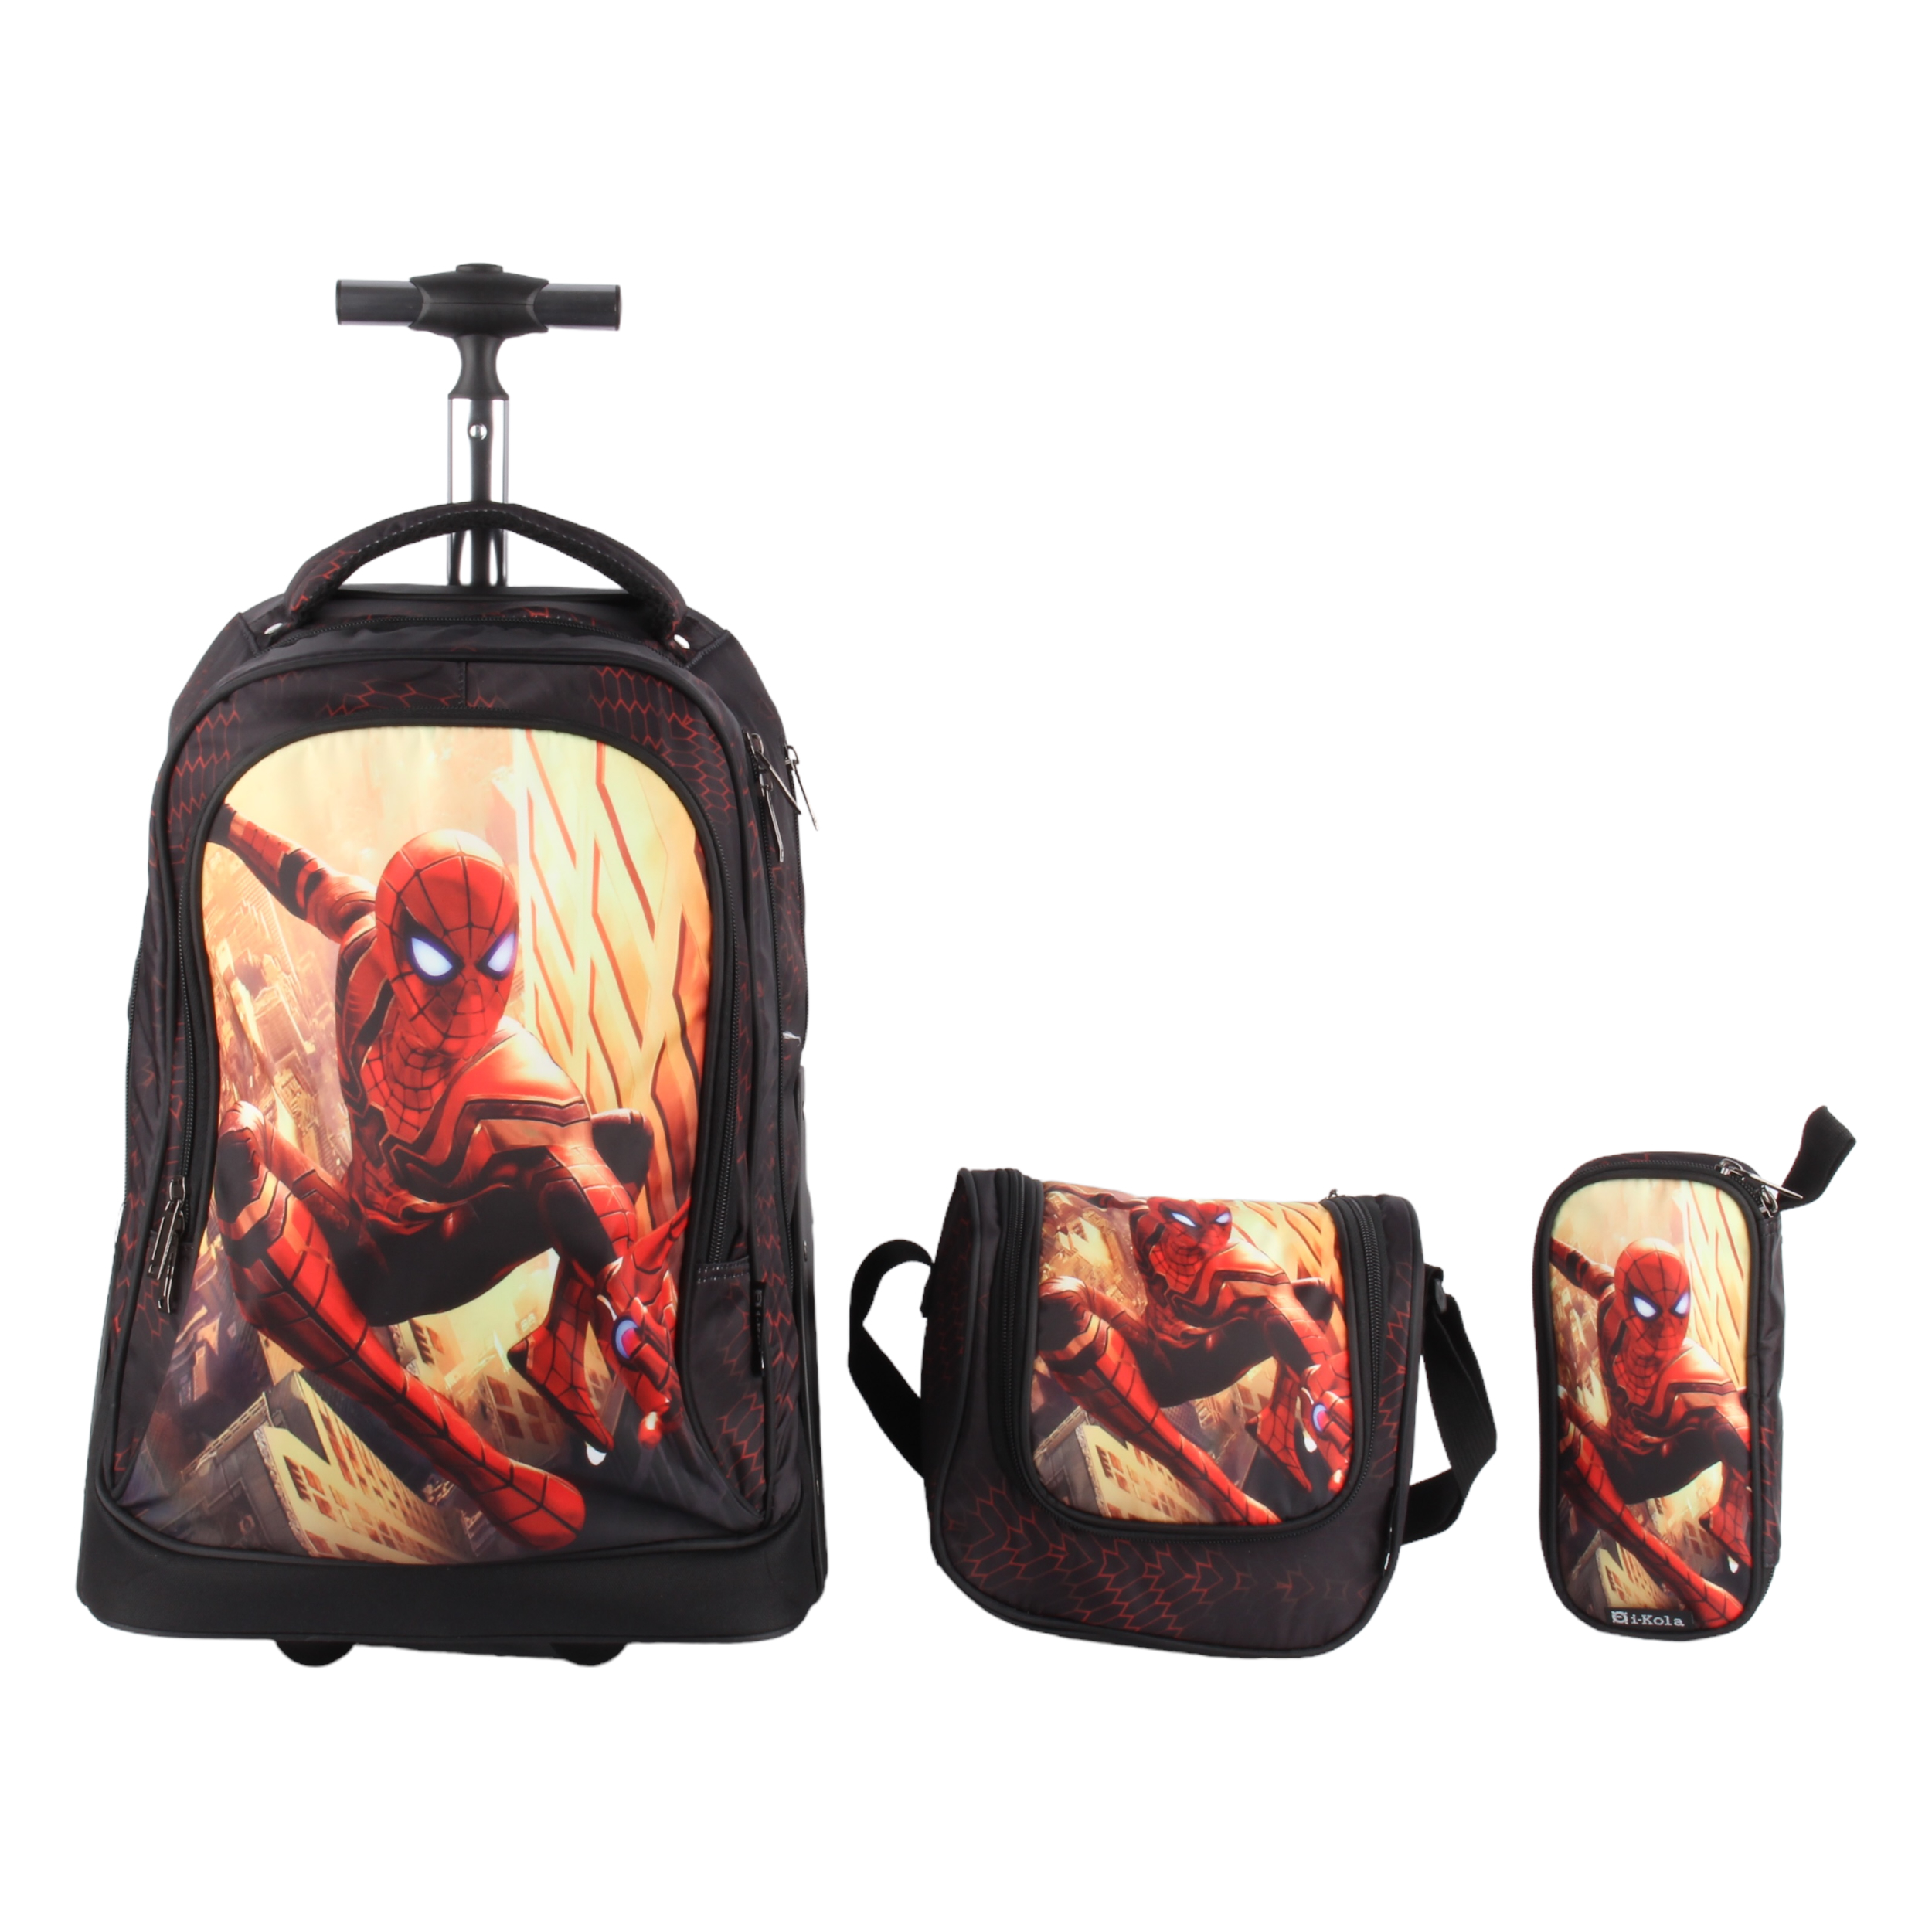 نکته خرید - قیمت روز کوله پشتی چرخ دار مدل E620 طرح مرد عنکبوتی به همراه کیف غذا و جامدادی خرید